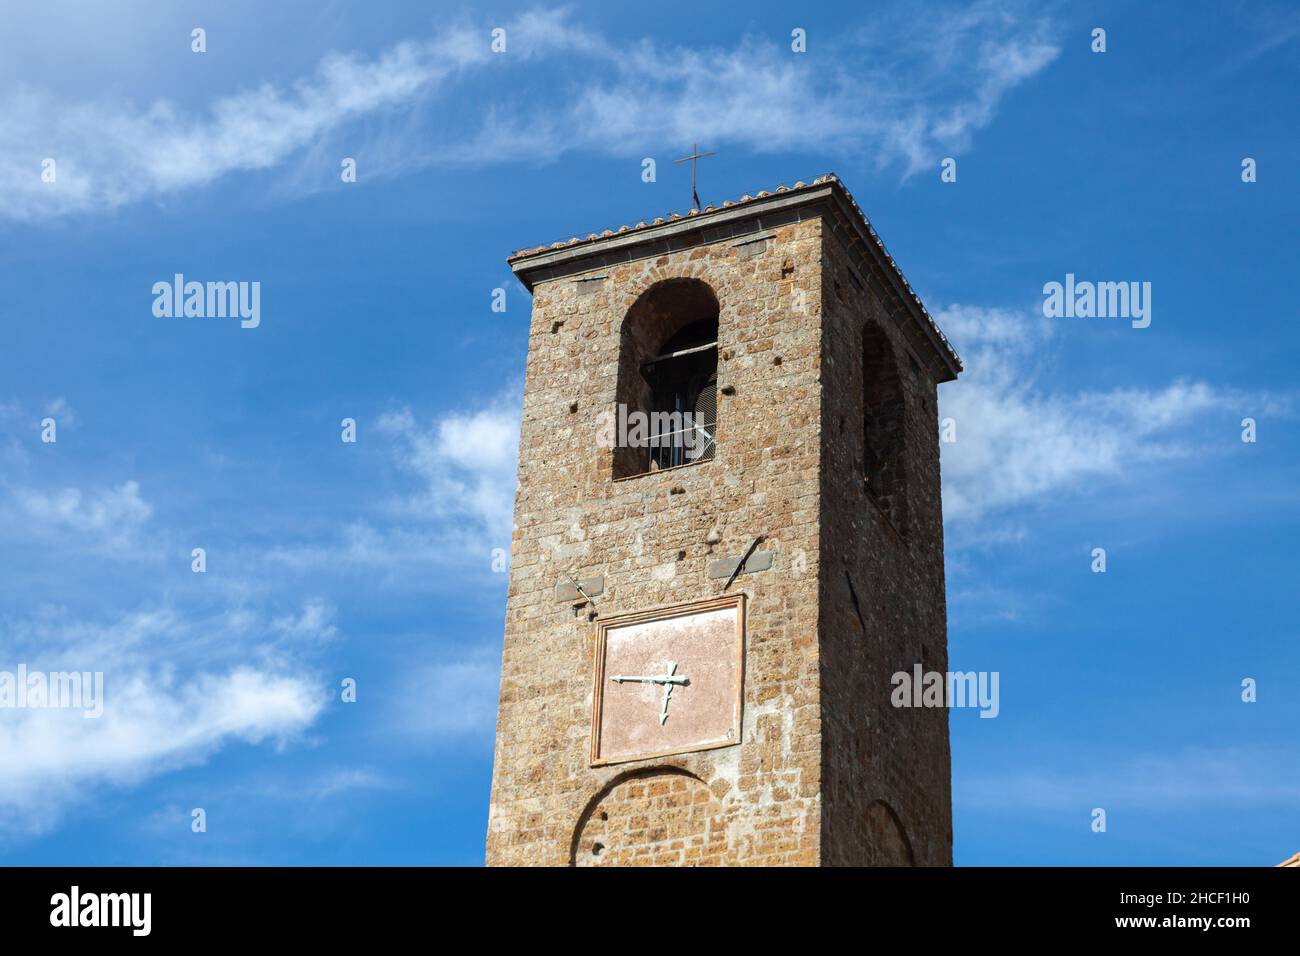 Le clocher de l'église principale de Civita di Bagnoregio, la ville mourante, Lazio, Italie, contre le ciel bleu Banque D'Images